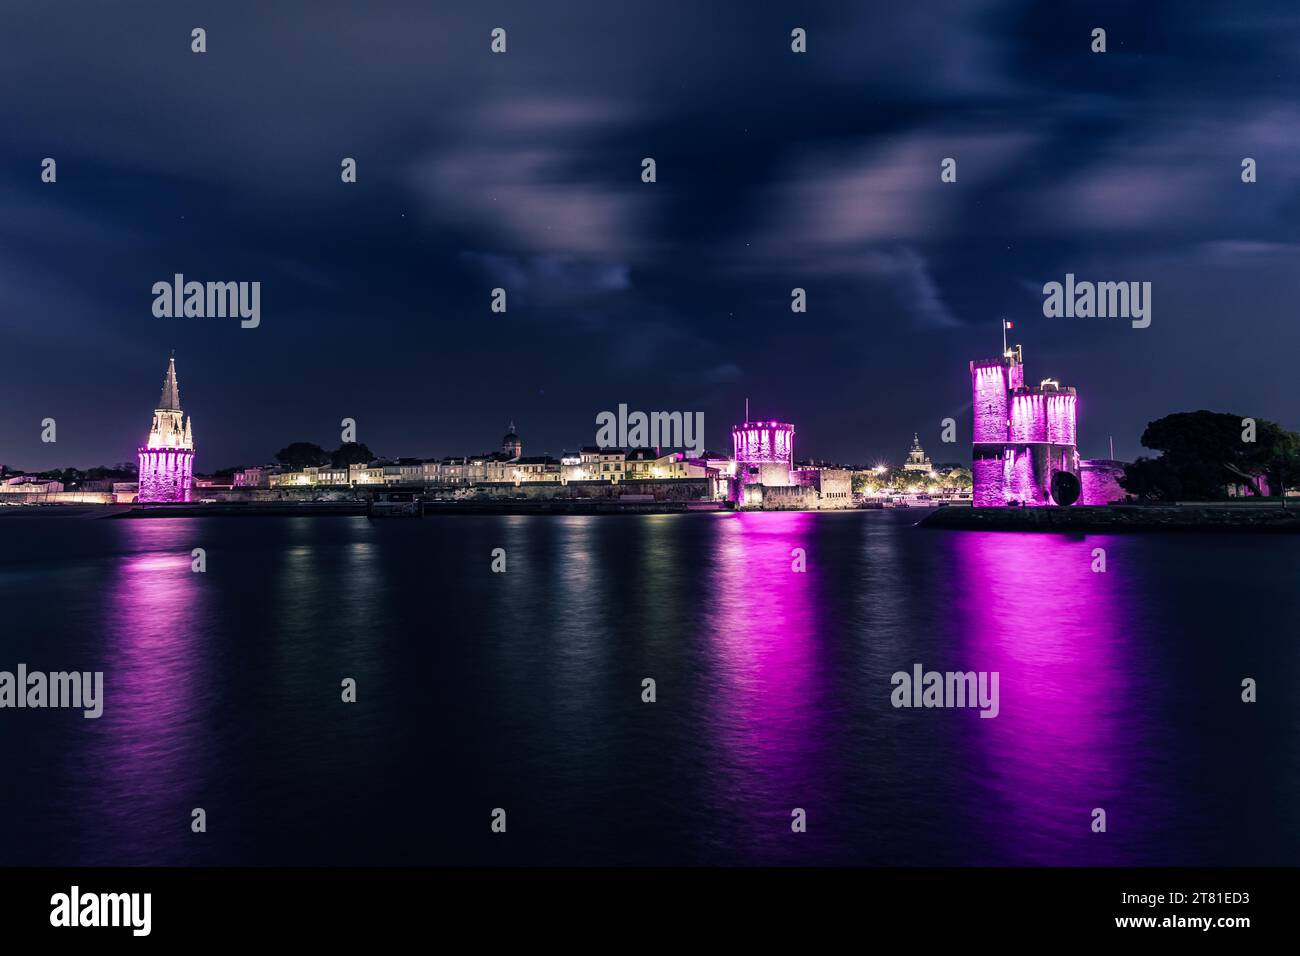 Vista panoramica del porto vecchio la Rochelle con le sue famose torri. Notte con luci rosa per ottobre rosa. Ottobre rosa è cancro al seno consapevole Foto Stock